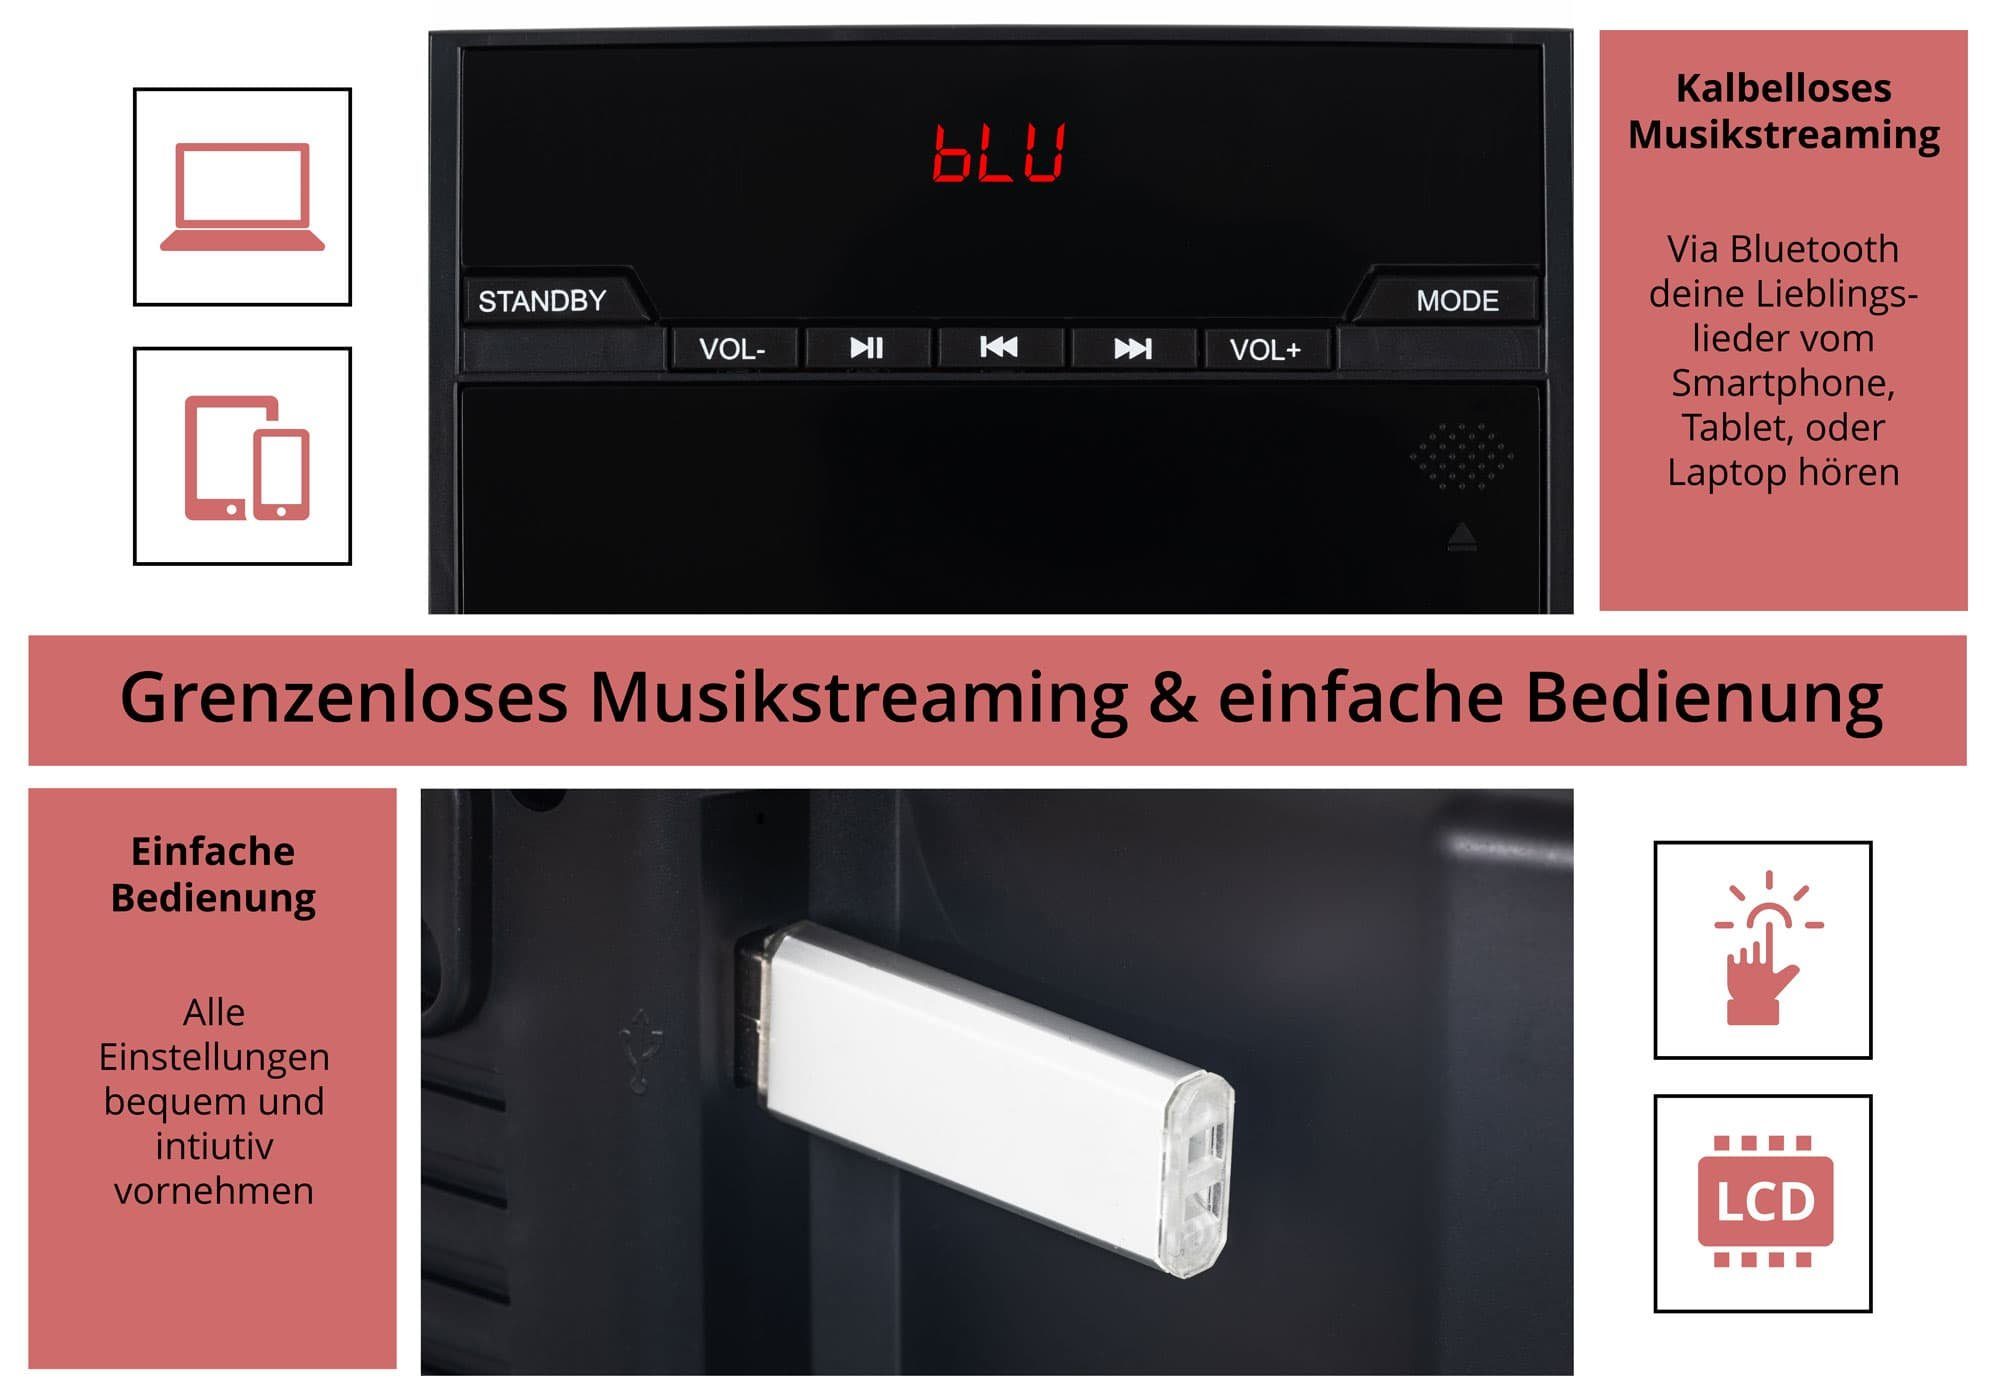 CD/MP3-Player, mit Stereoanlage und Beatfoxx Vertikal 6,00 Microanlage Bluetooth) W, USB-Slot (UKW/MW-Radio, MCD-60